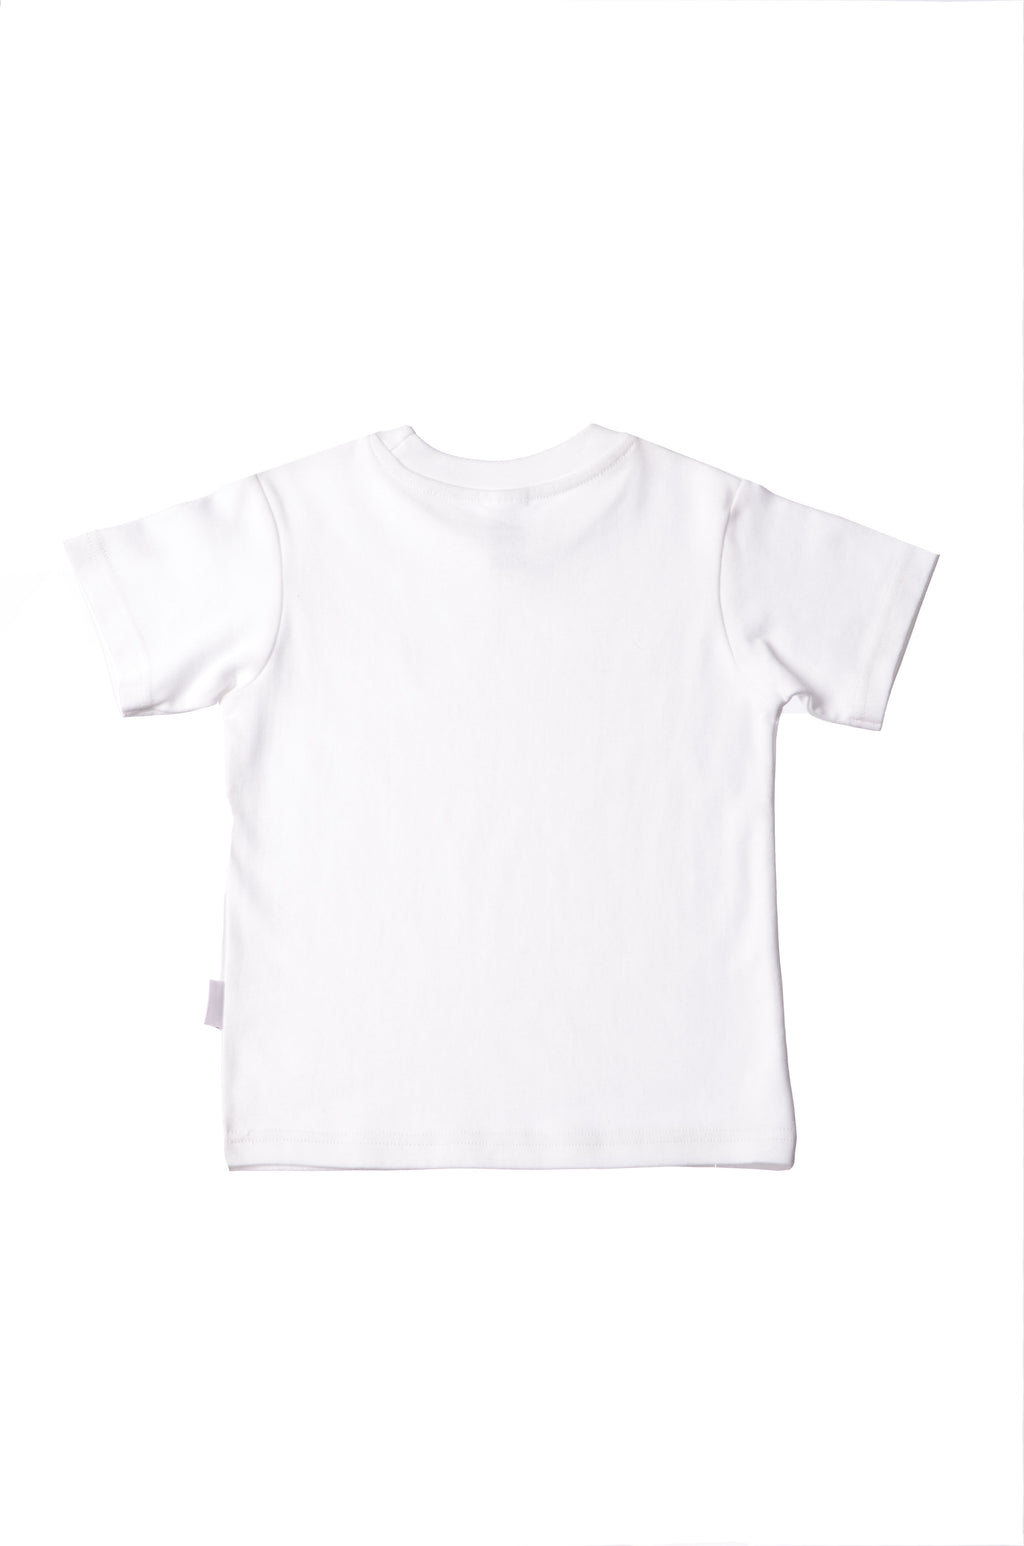 T-Shirt in mit weiß Kinder dezentem Bio-Baumwoll Liliput – Leoparden Aufdruck Baby